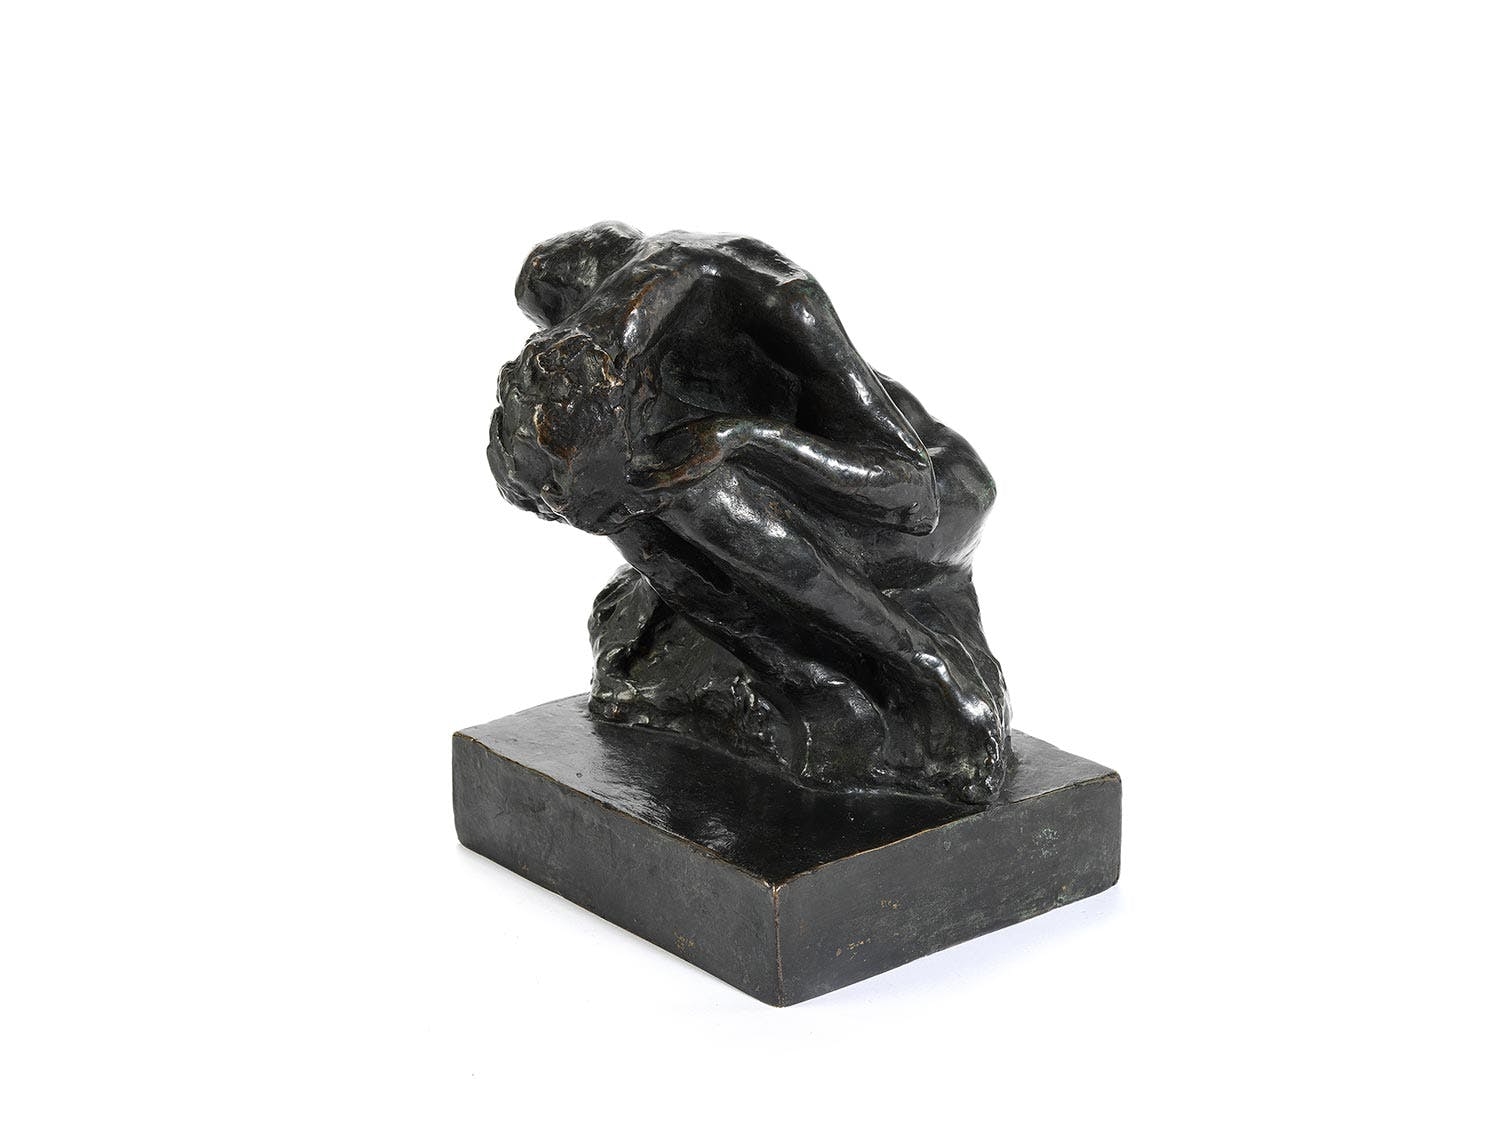 Artwork by Auguste Rodin, Denker, Made of Bronze Plastic